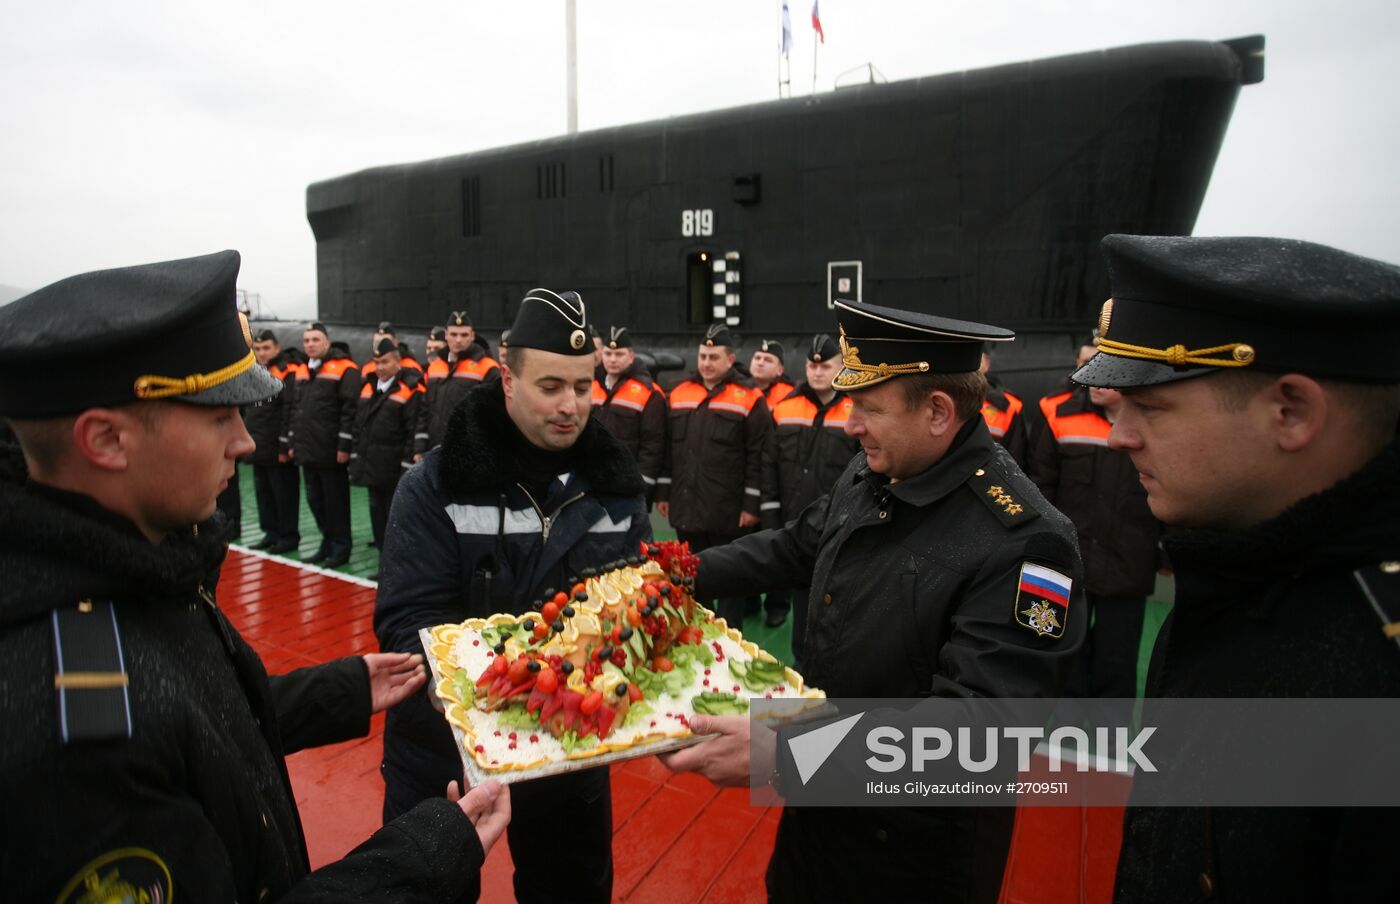 Russian Alexander Nevsky submarine joins Pacific Fleet